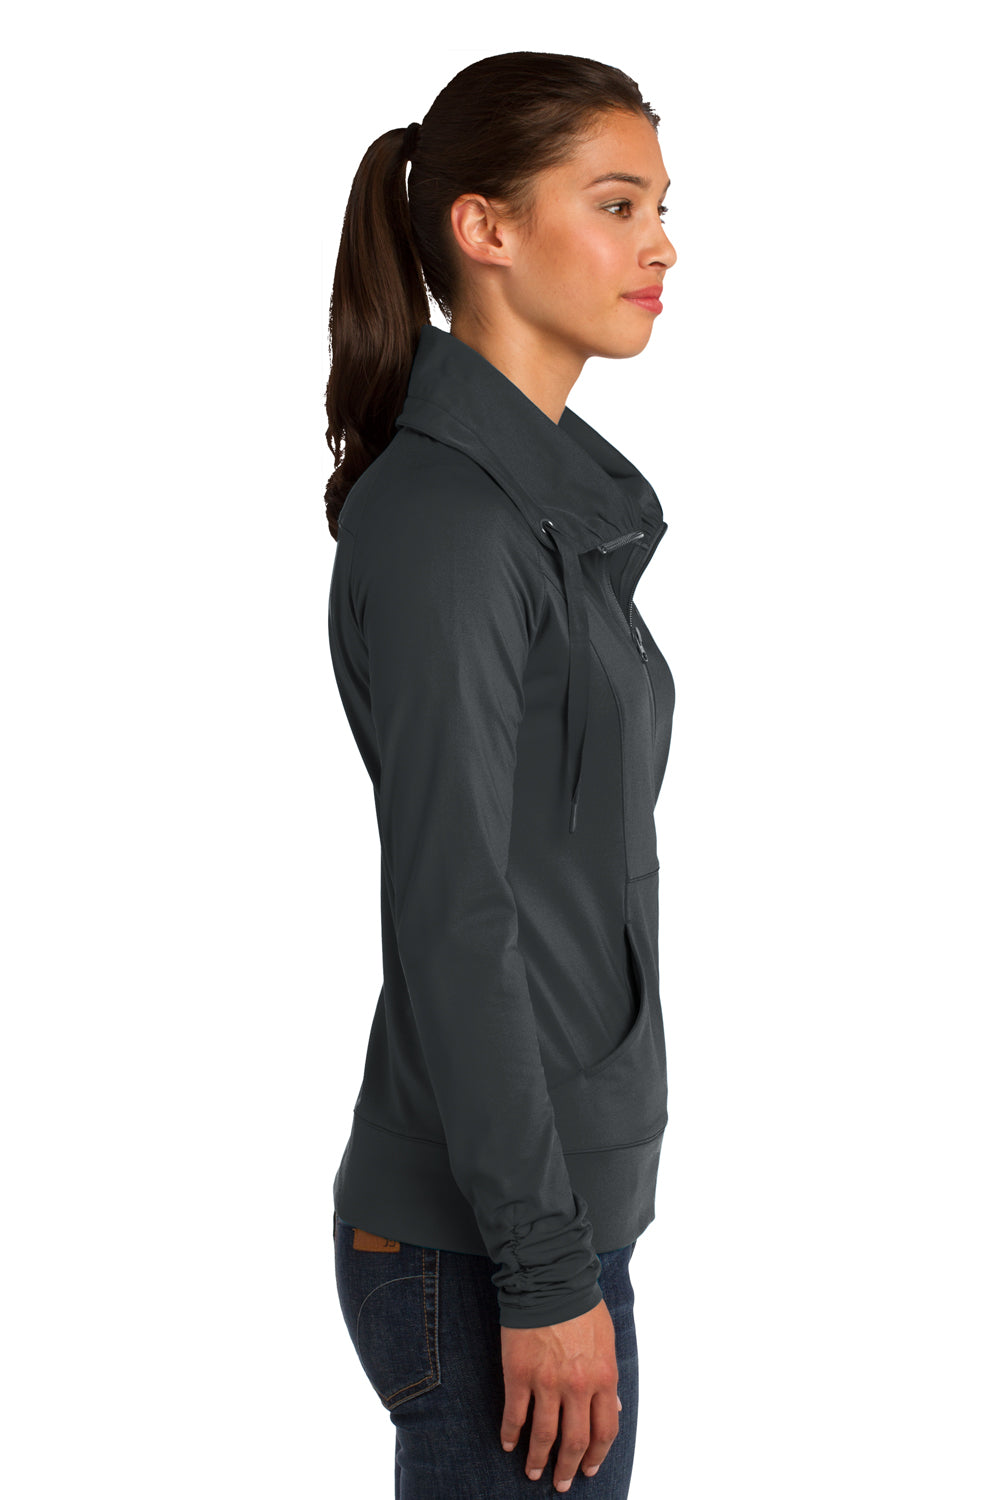 Sport-Tek LST852 Womens Sport-Wick Moisture Wicking Full Zip Jacket Charcoal Grey Side